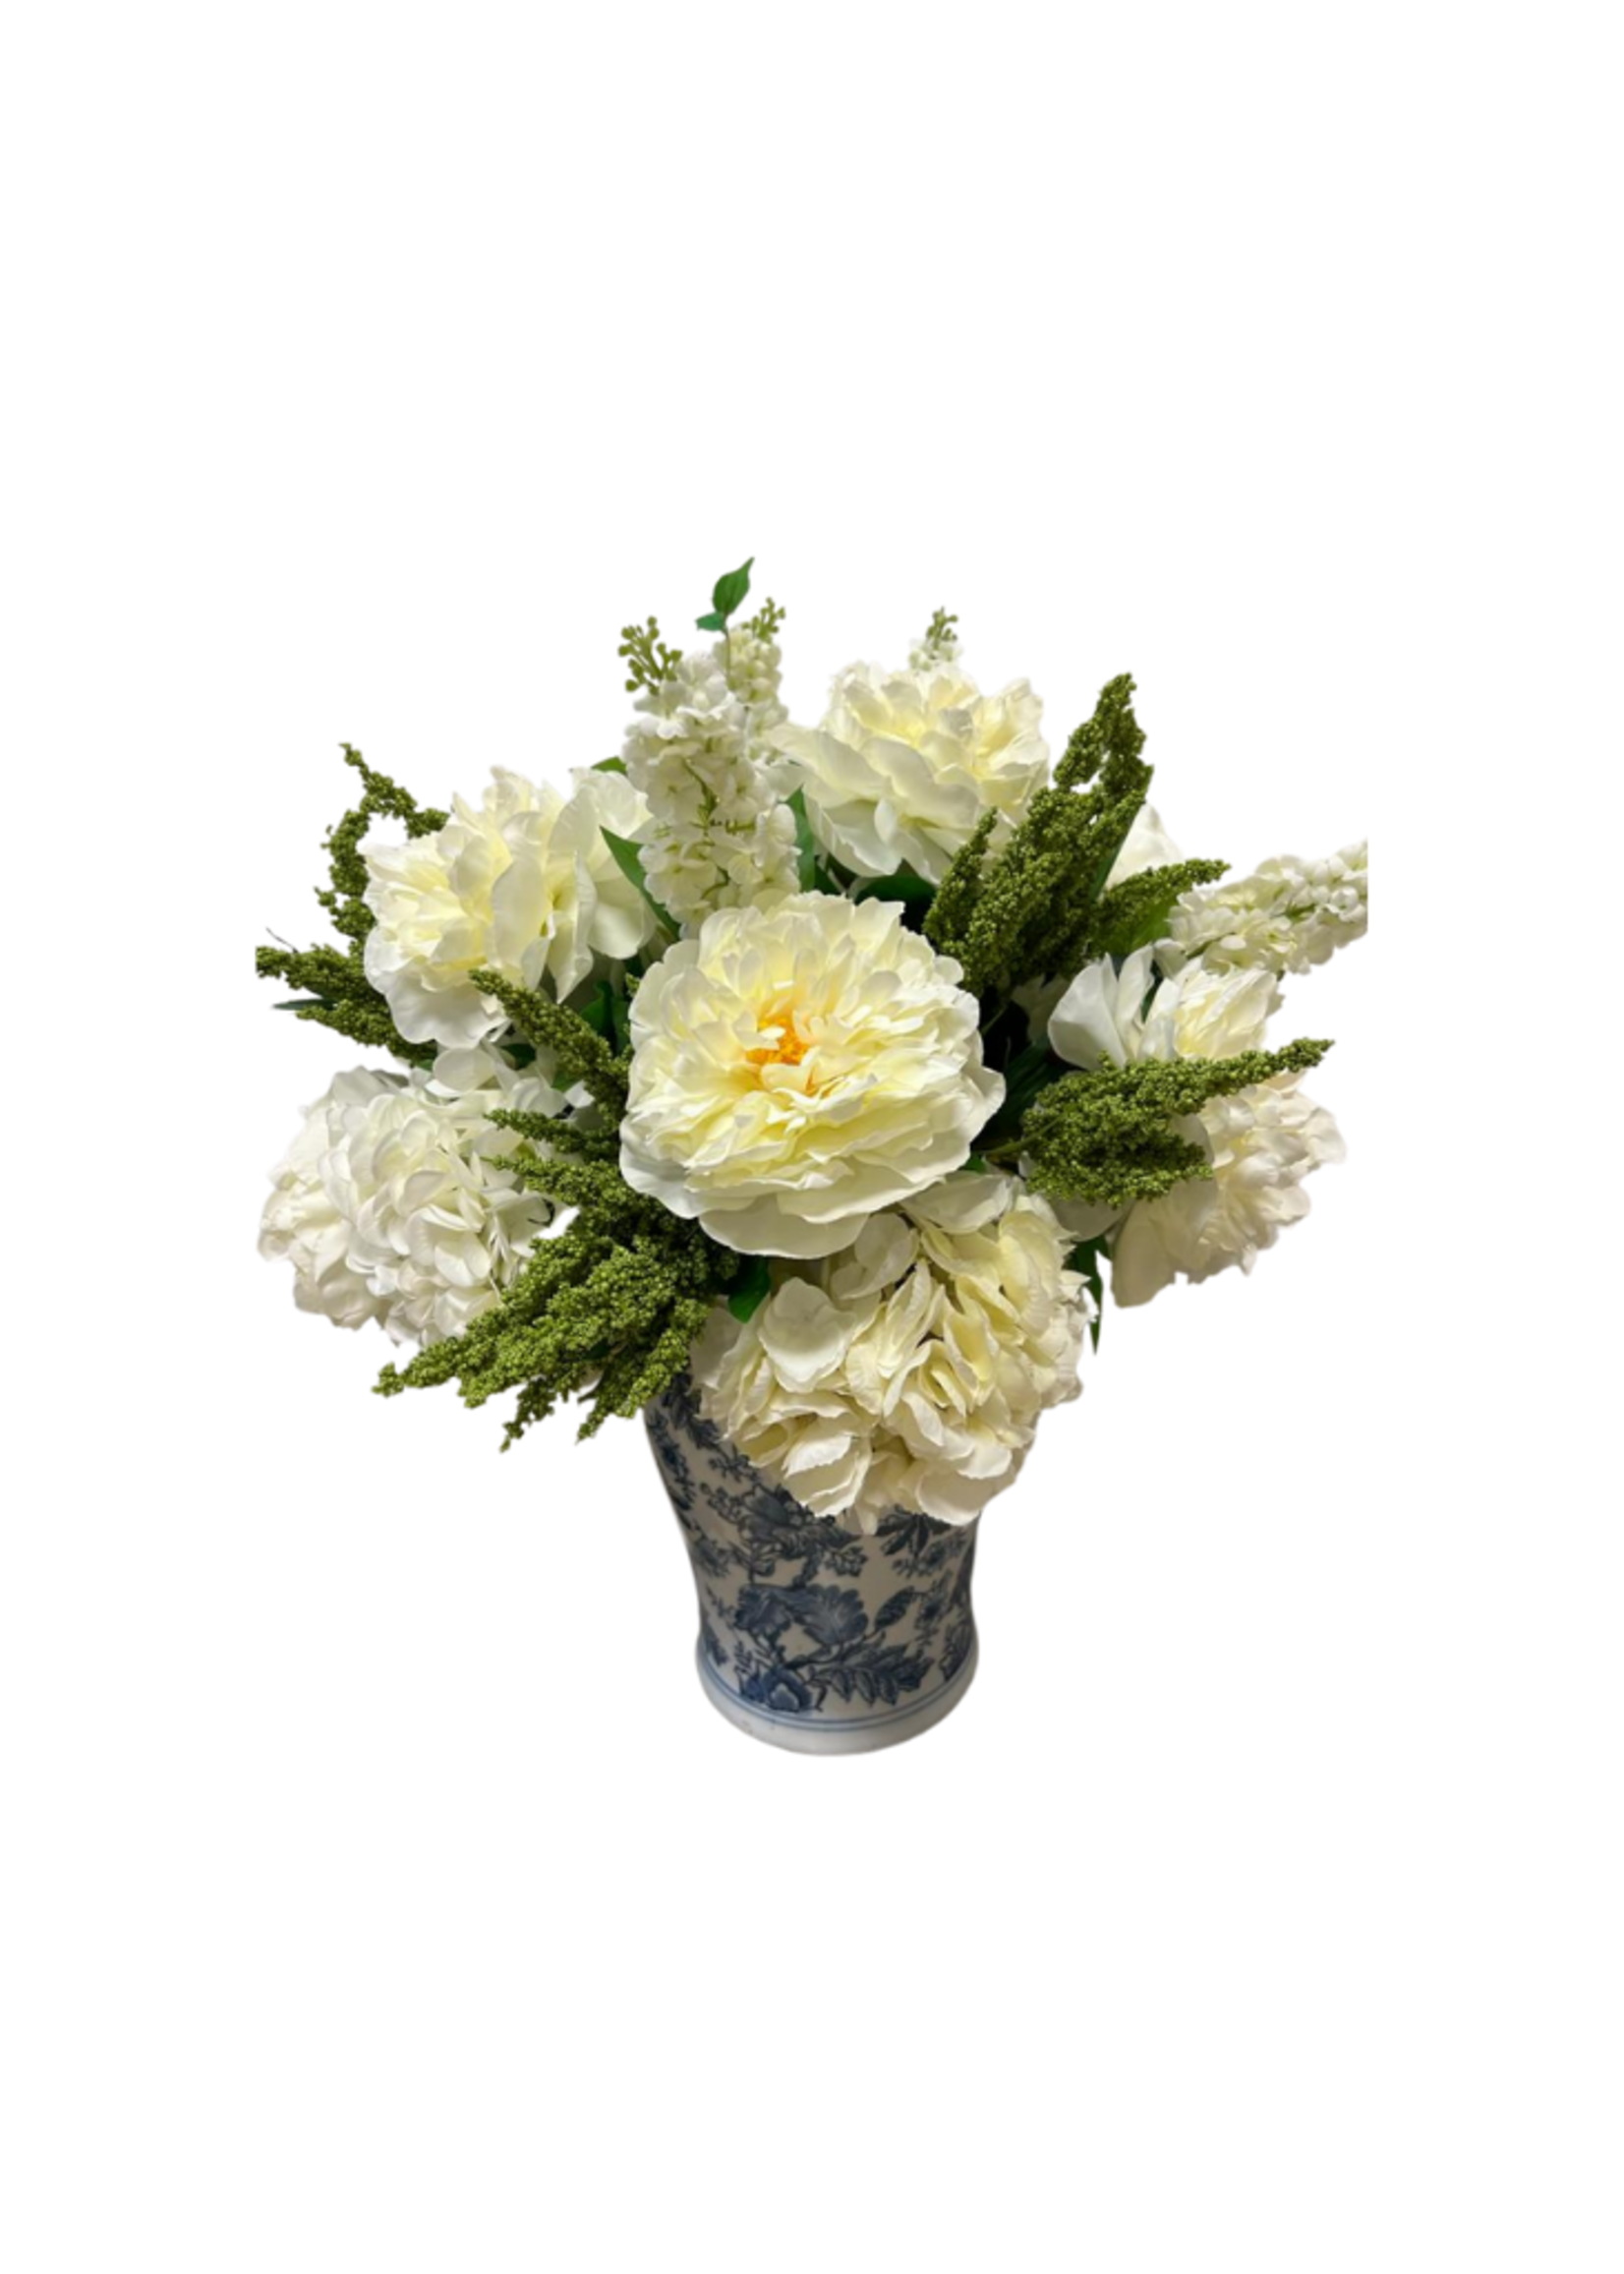 Tall White Arrangement // Blue and White Ceramic Vase